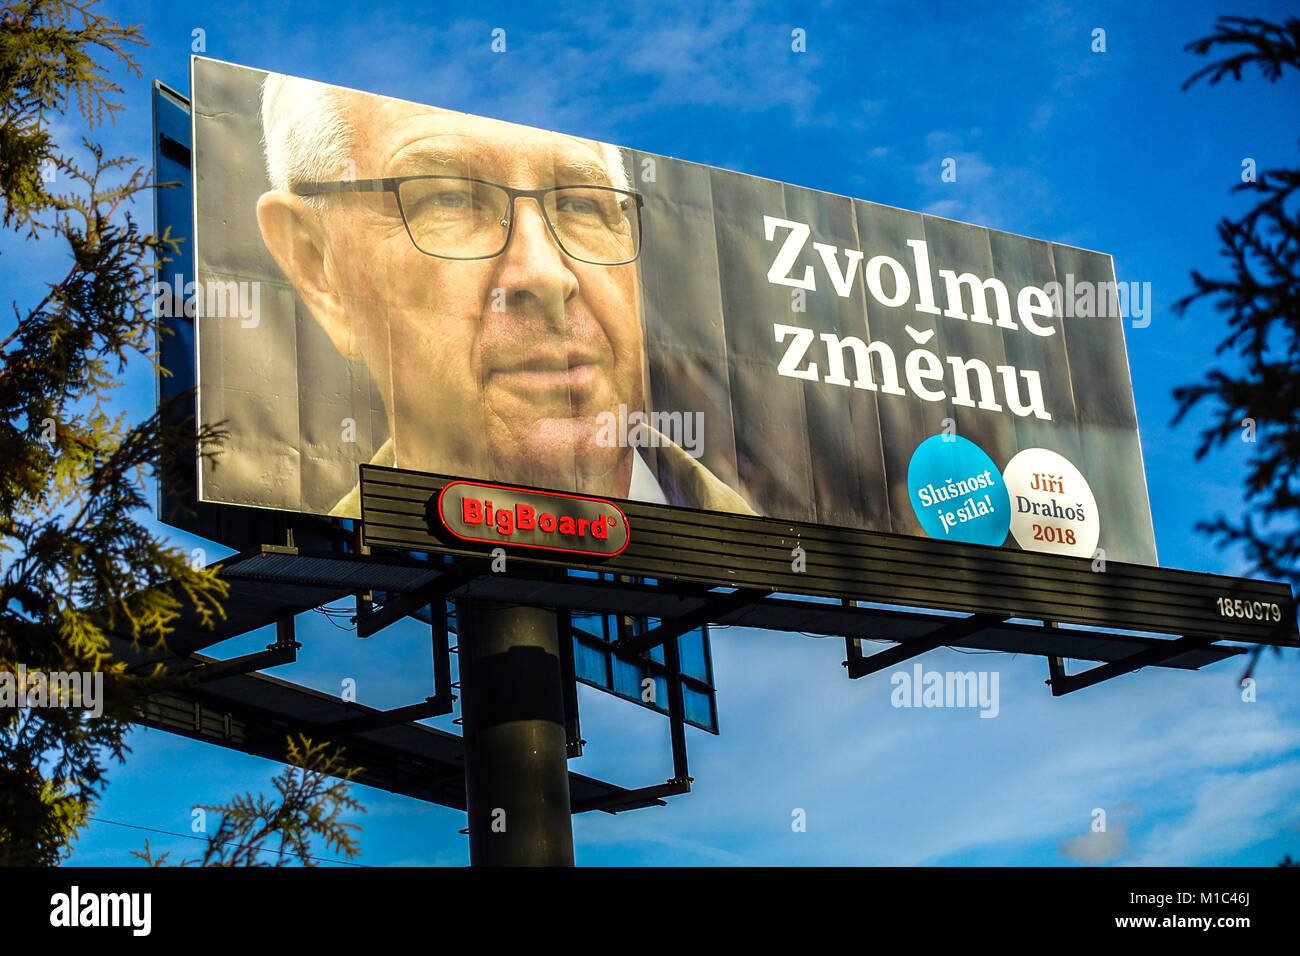 Élections, campagne présidentielle tchèque de Jiri Drahos. Voter le changement, République Tchèque Banque D'Images